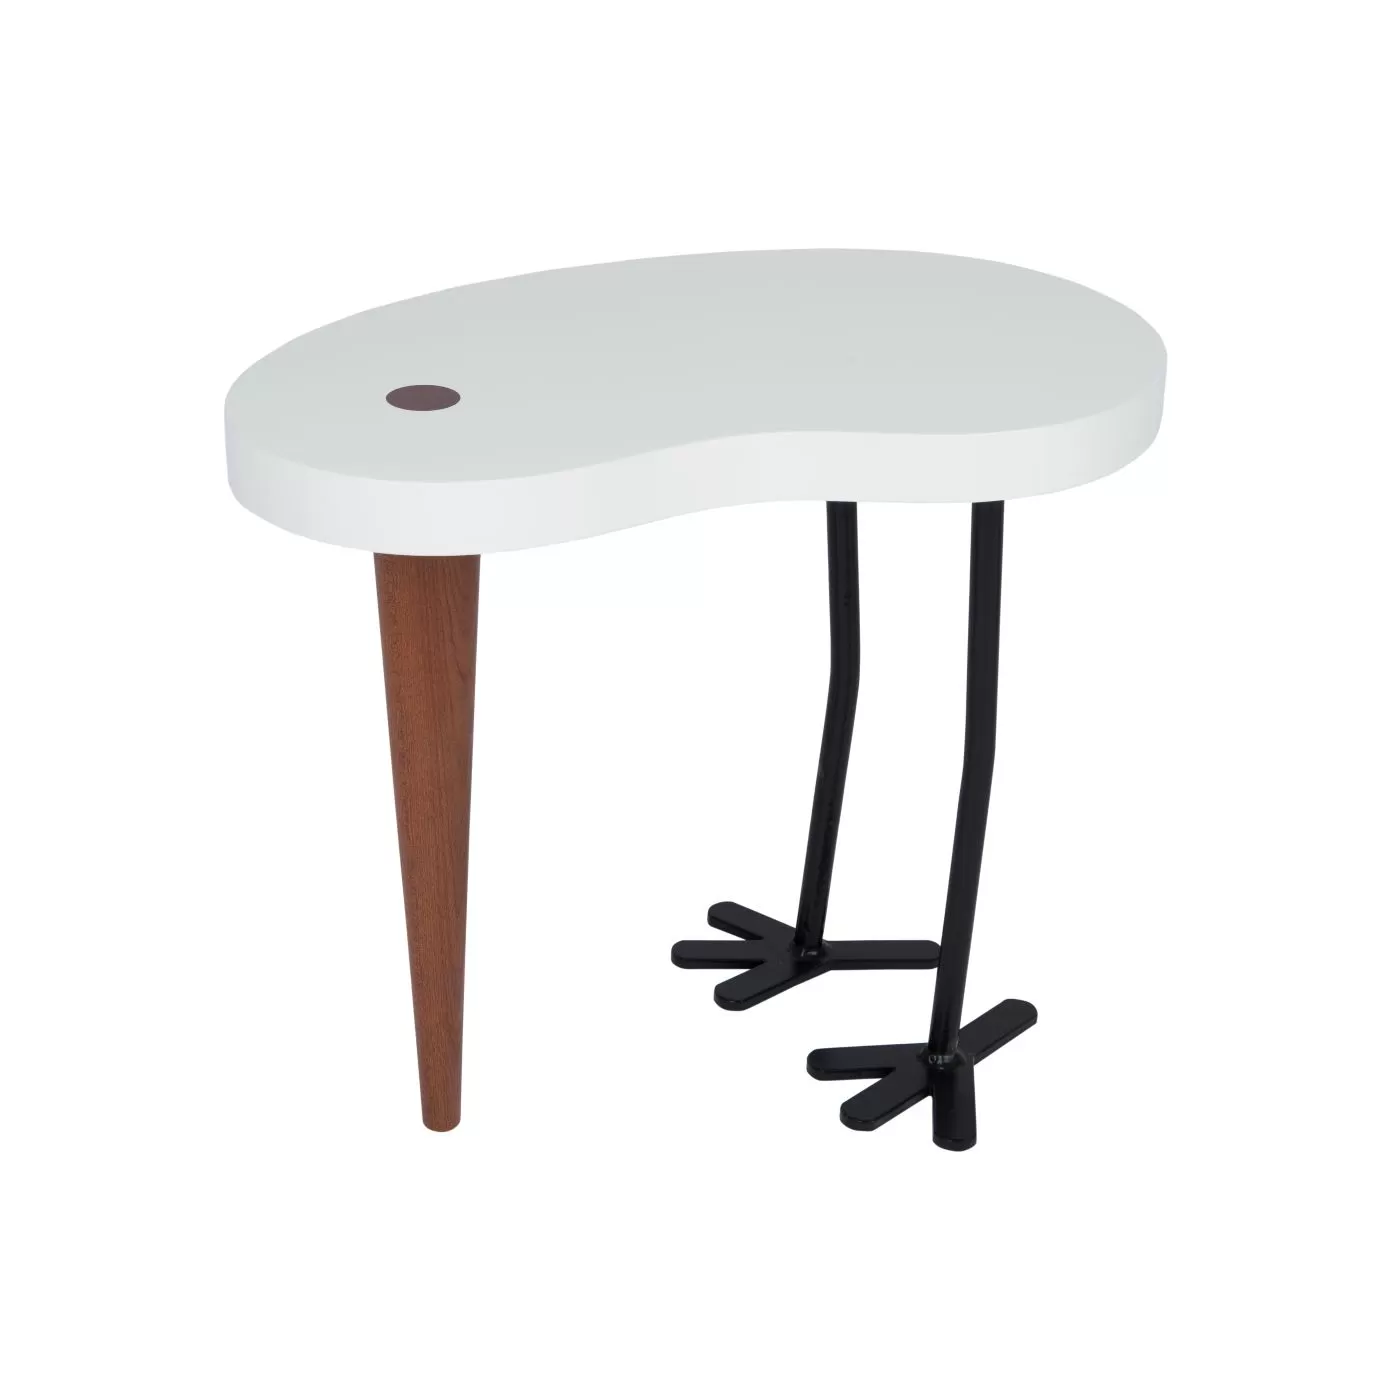 Stolik kawowy, z drewniany białym blatem, jedną mahoniową nogą i dwoma metalowymi nogami w kolorze czarnym.